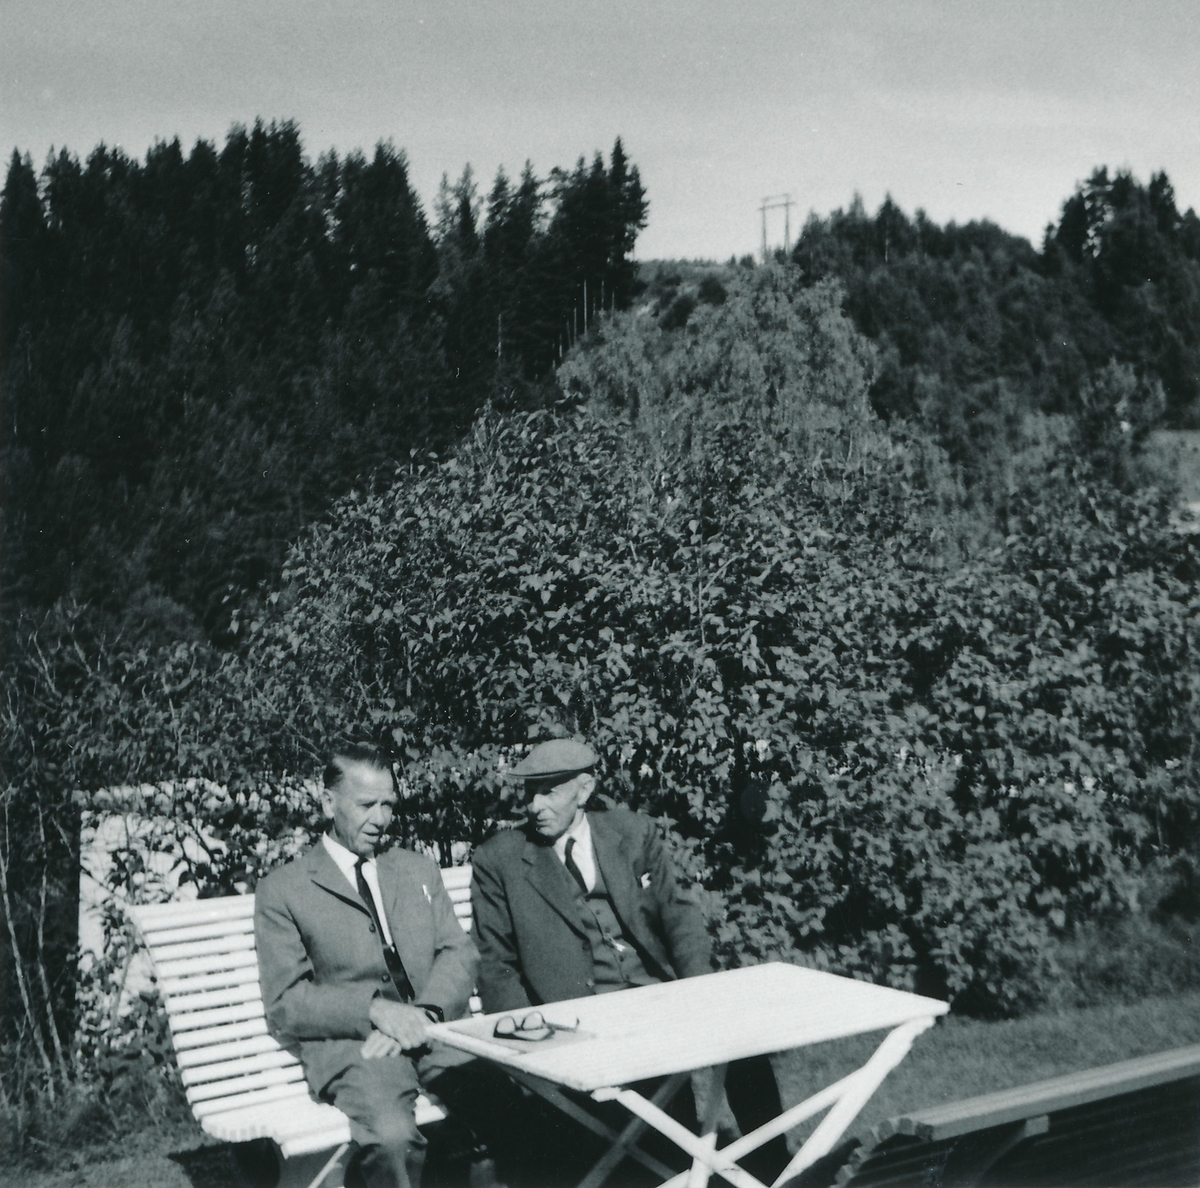 2 menn i en hage sitter på benk med bord foran seg.